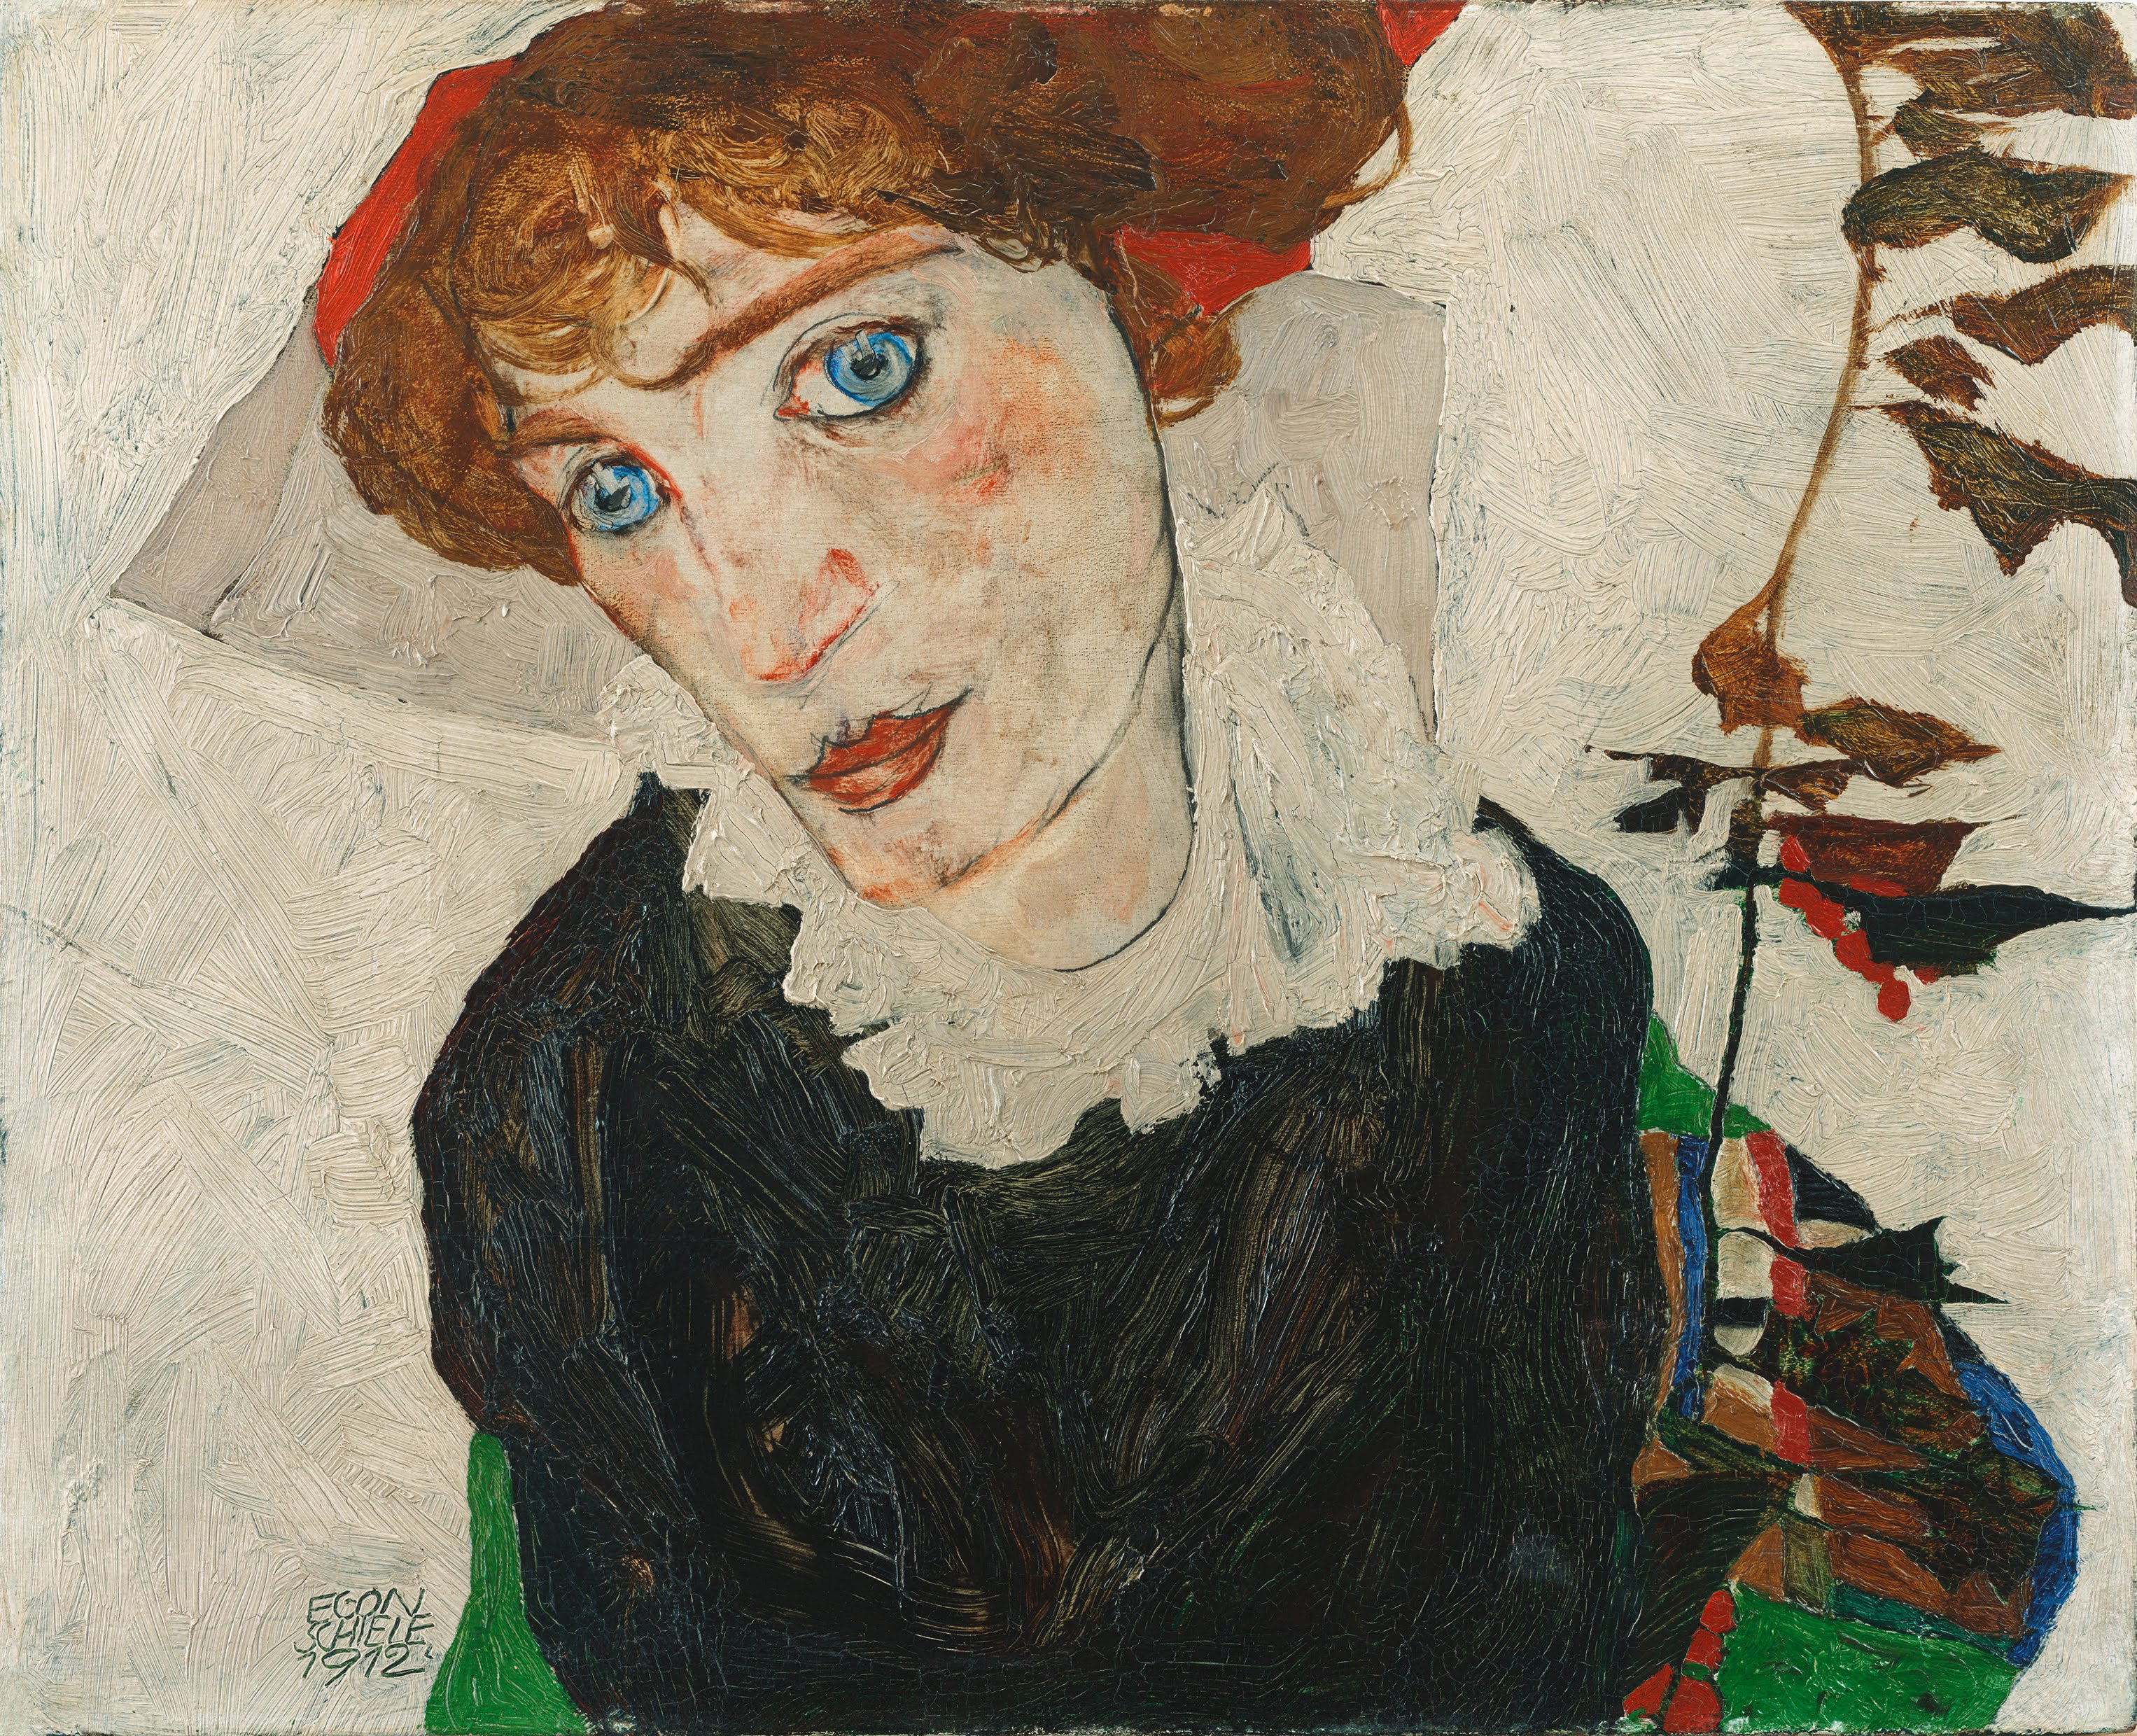 沃莉·諾伊齊爾 by Egon Schiele - 1912 - 32 x 39.8 cm 